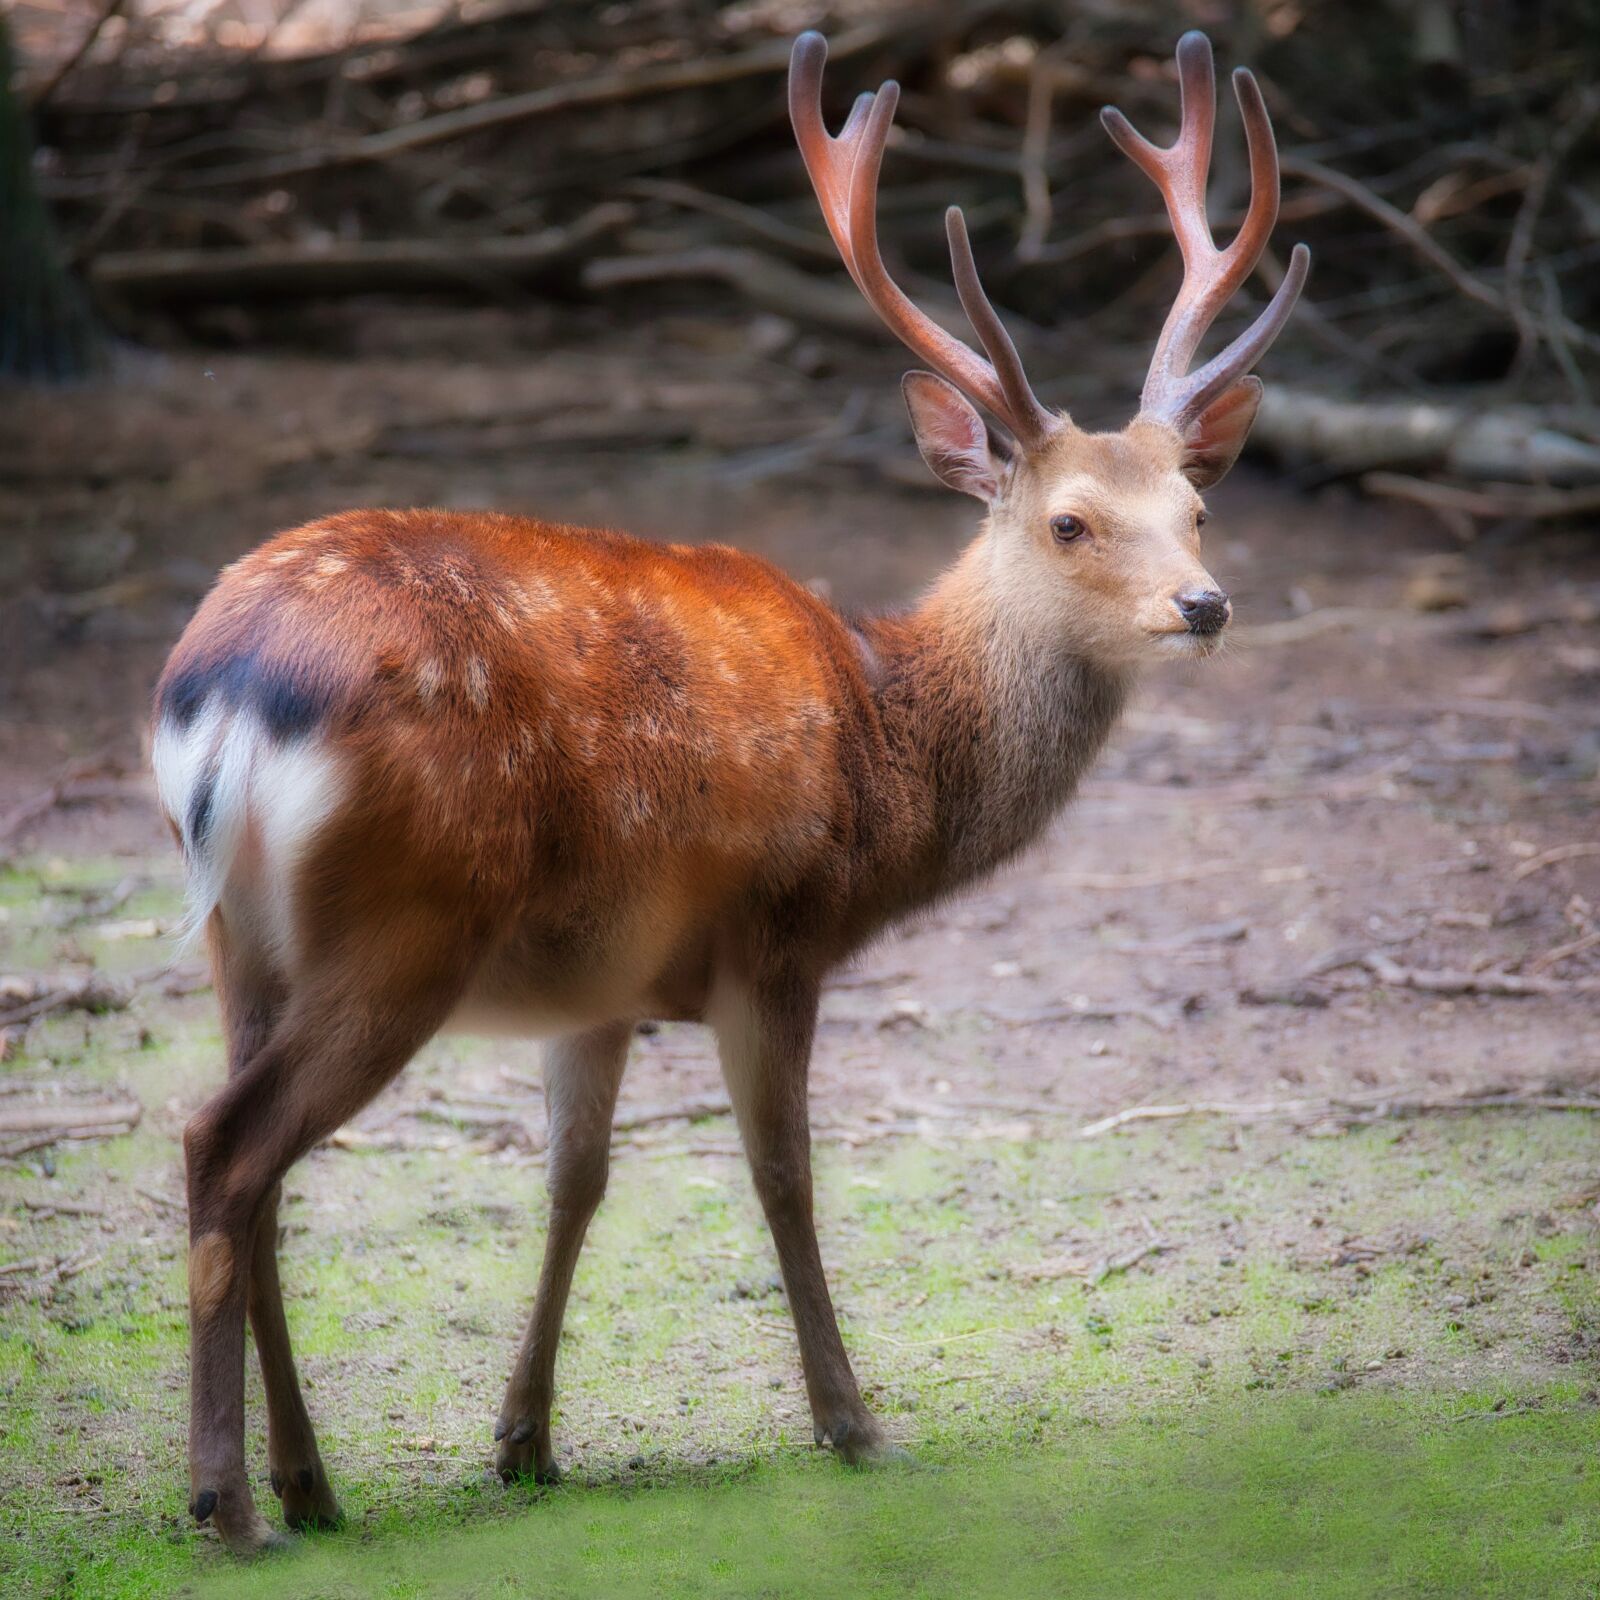 Nikon Z6 sample photo. Hirsch, sika deer, antler photography